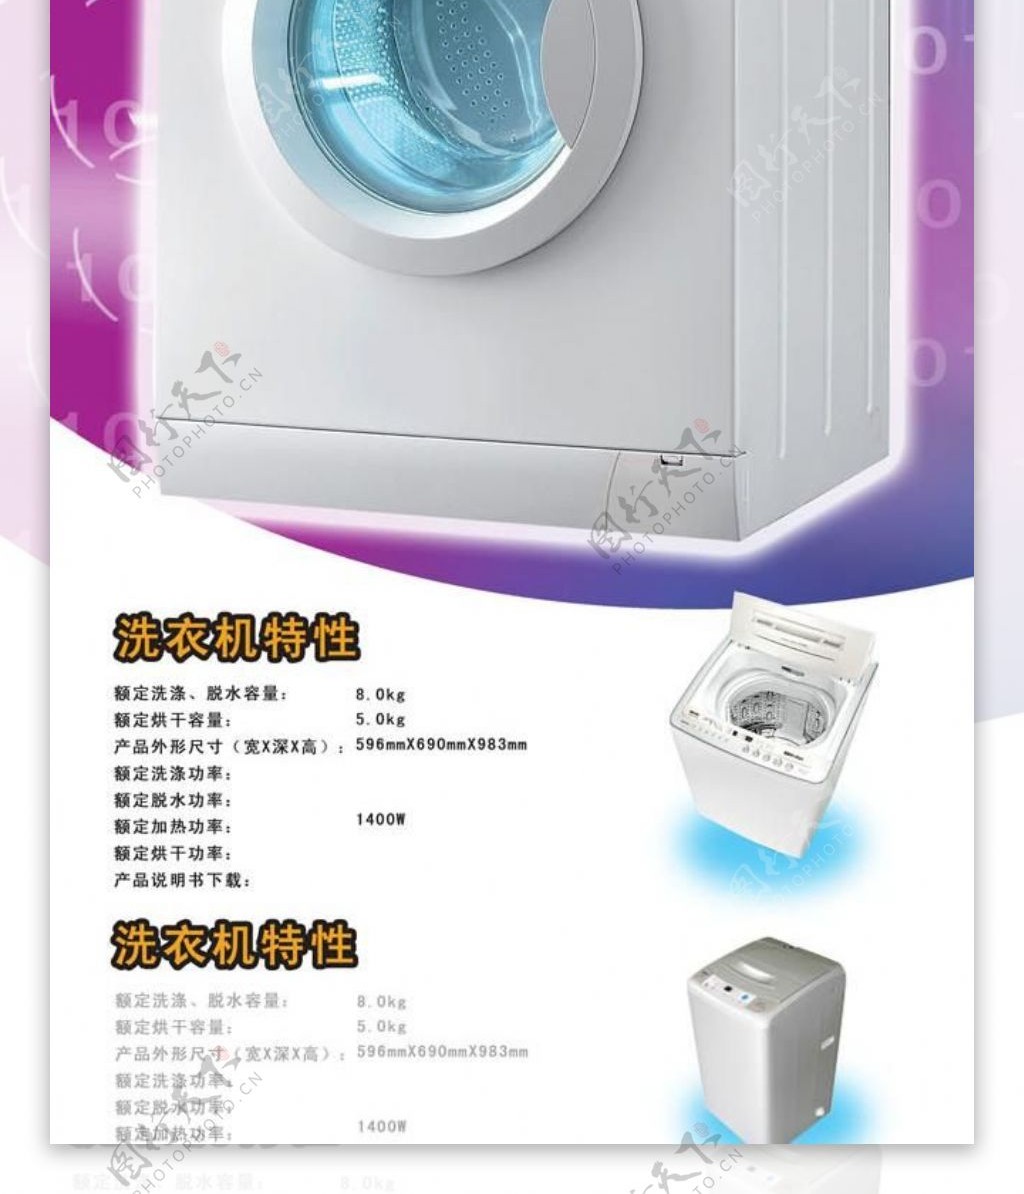 三洋洗衣机性能海报宣传广告图片